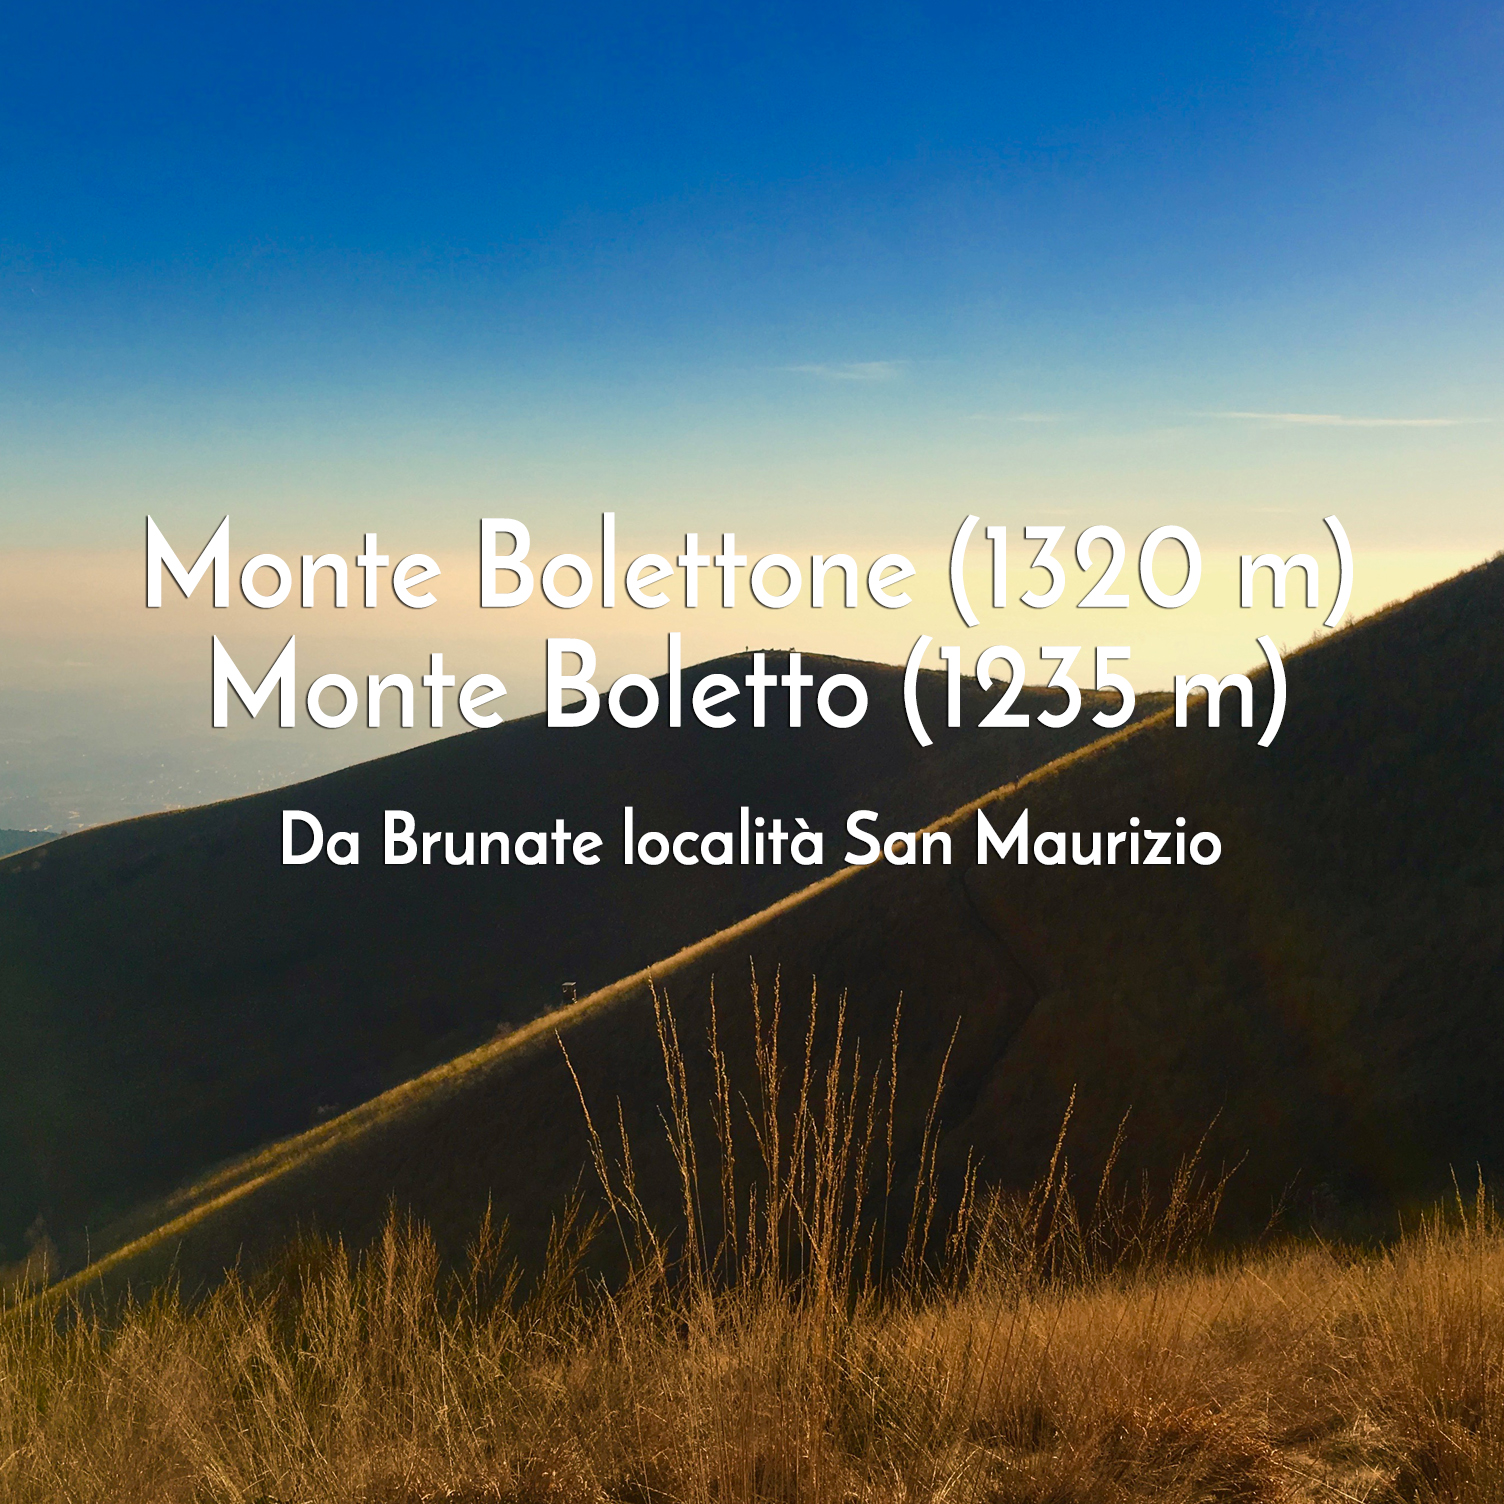 Monte Bolettone - Monte Boletto